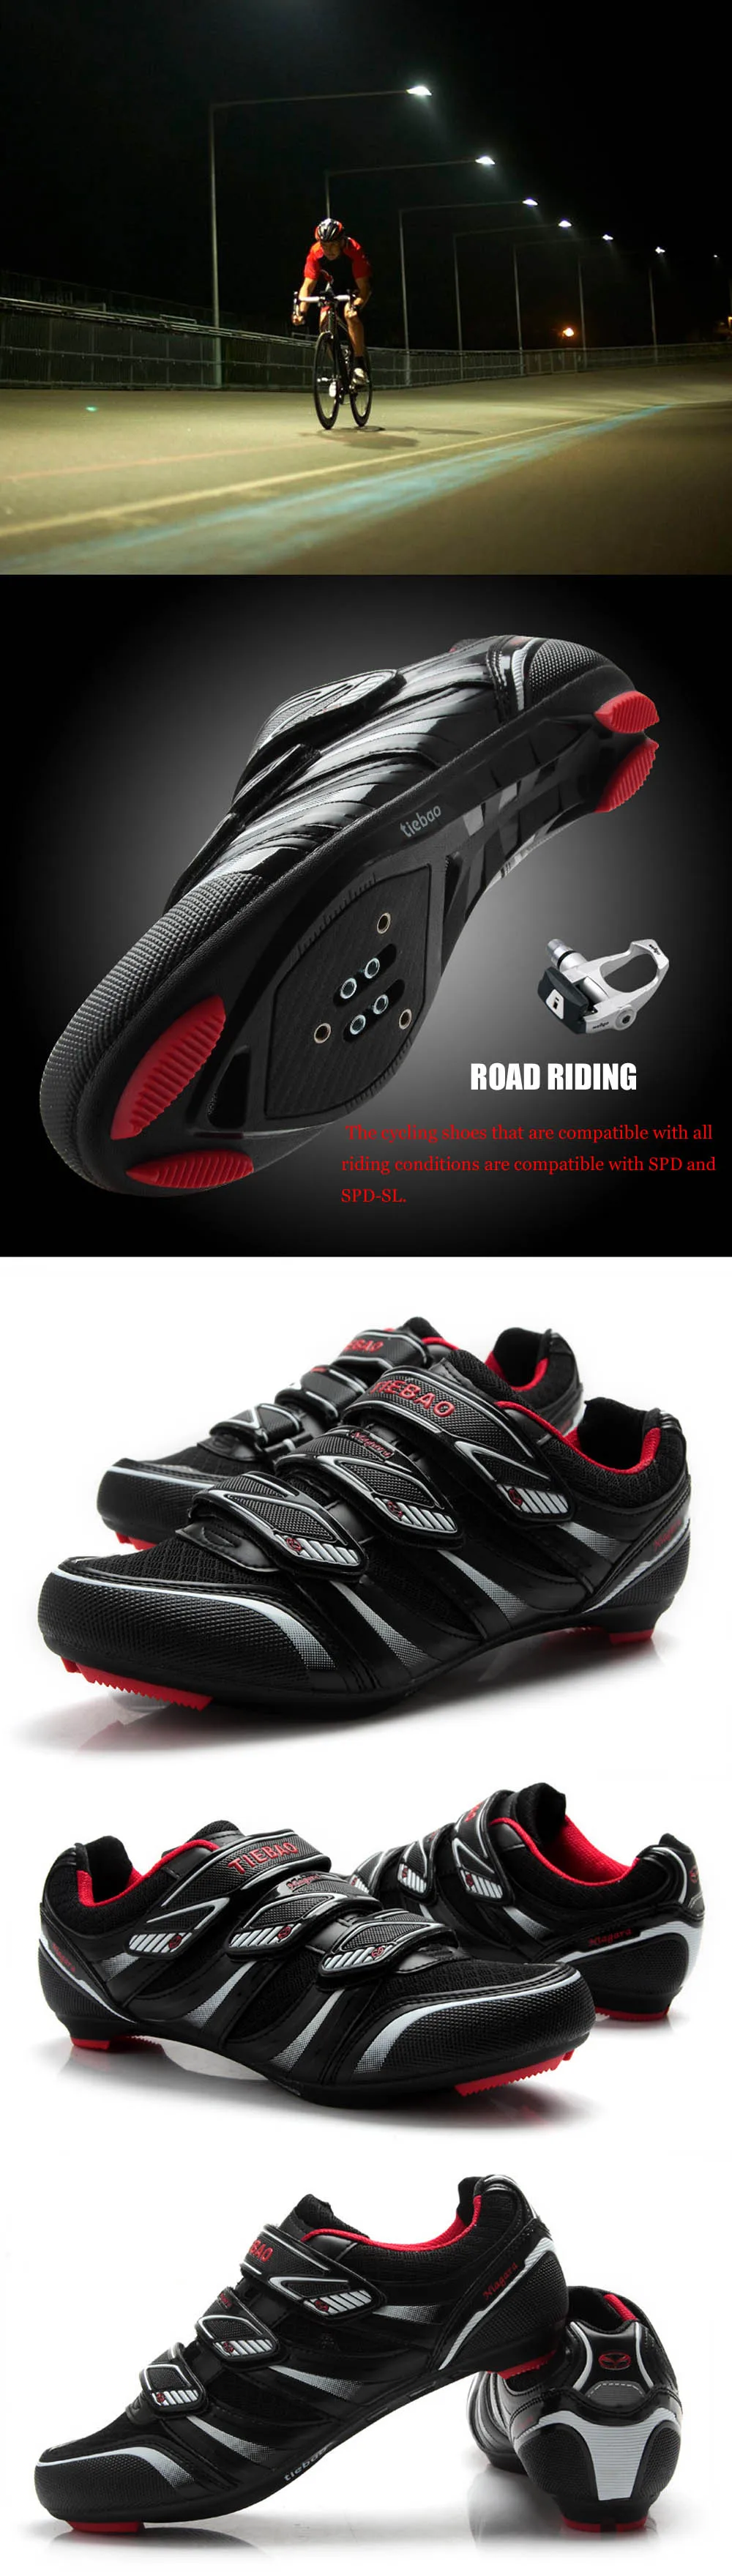 Tiebao/велосипедная обувь; обувь для езды на велосипеде из фанеры; обувь для езды по бездорожью; модель года; велосипедная обувь; велосипедные кроссовки; Zapatillas Zapato Ciclismo